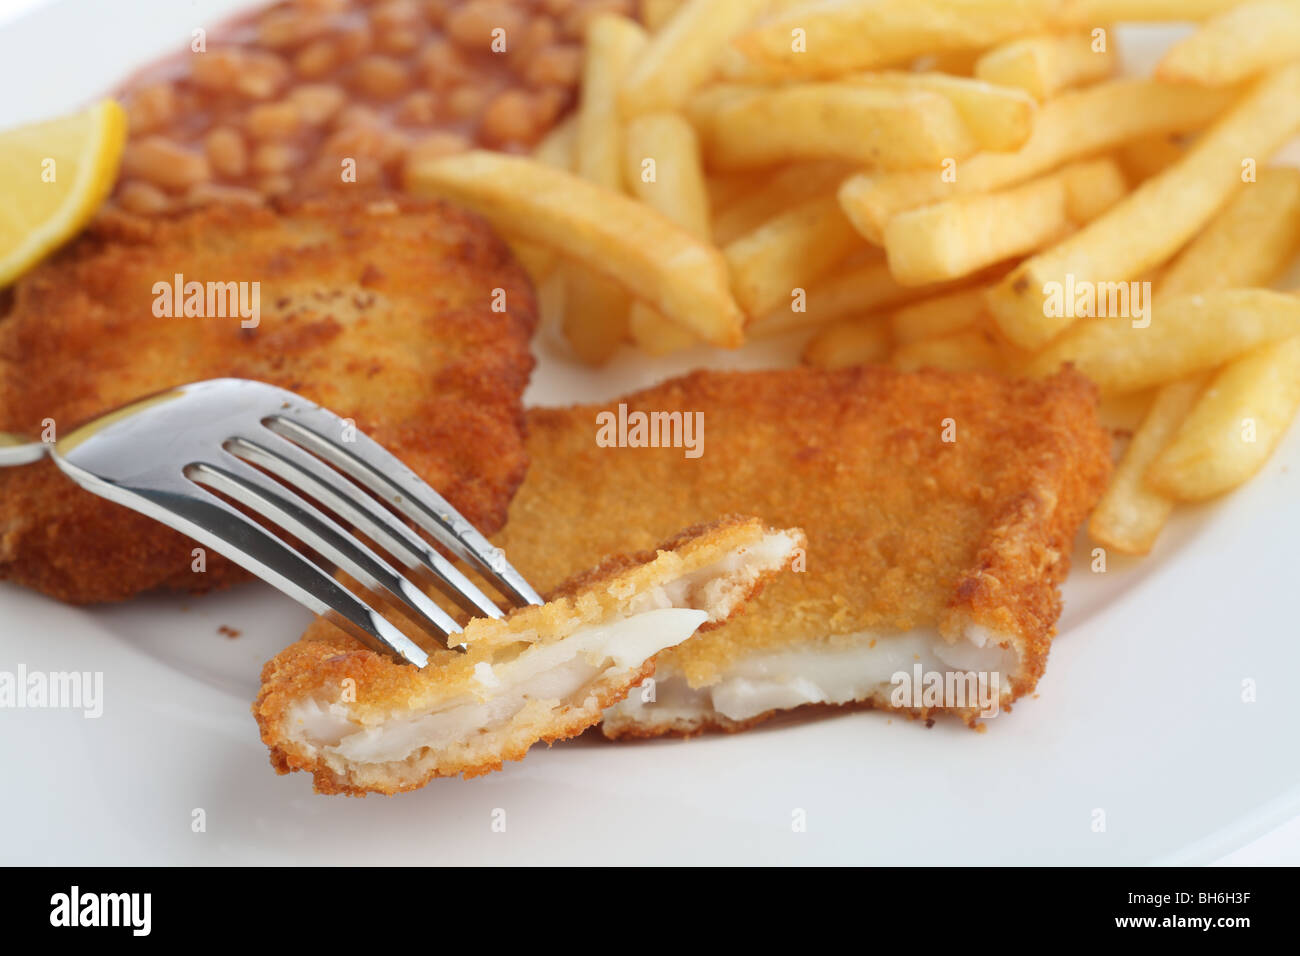 Un morceau de filet de poisson pané sur une fourchette, avec le repas de haricots cuits, chips (frites) et un quartier de citron derrière. Banque D'Images